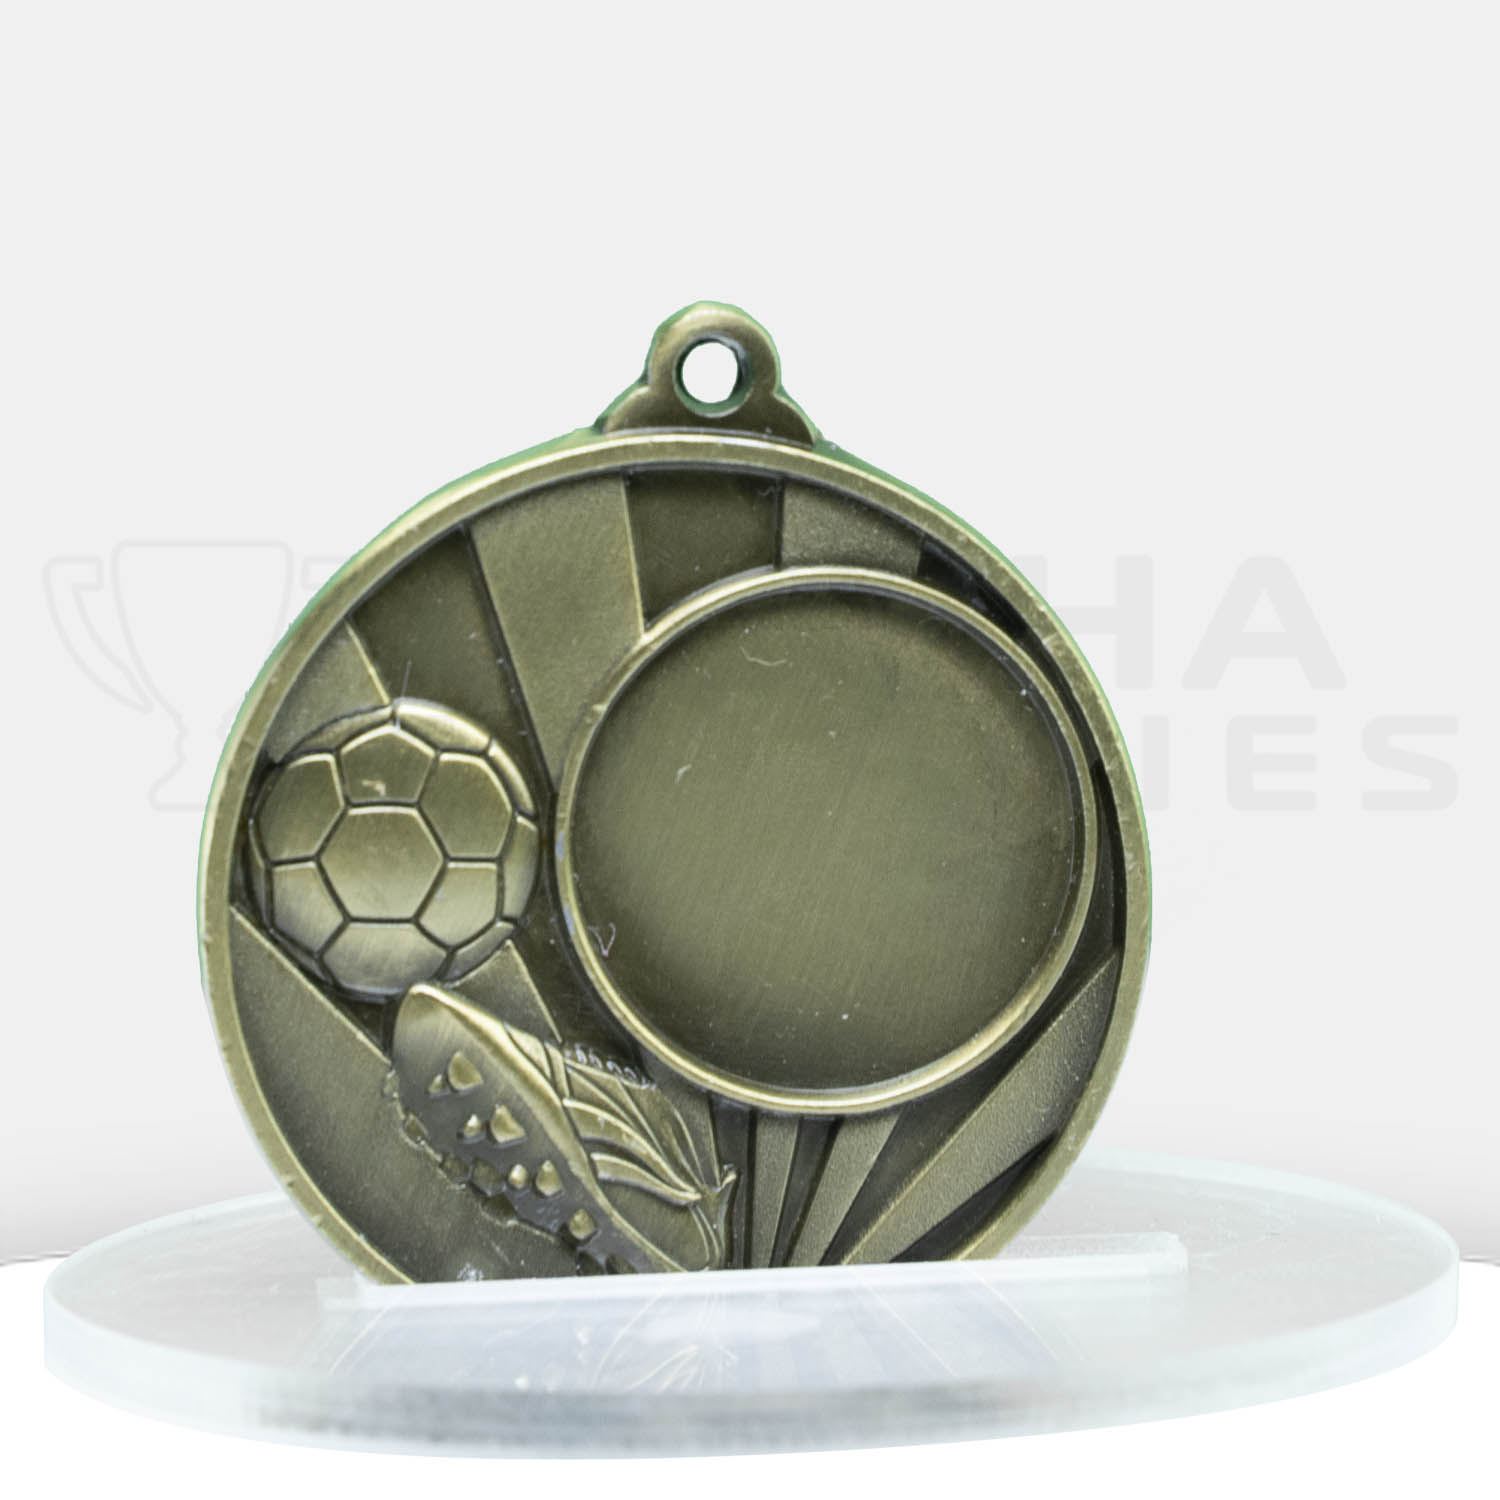 sunrise-medal-football-25mm-insert-gold-1076c-9g-front